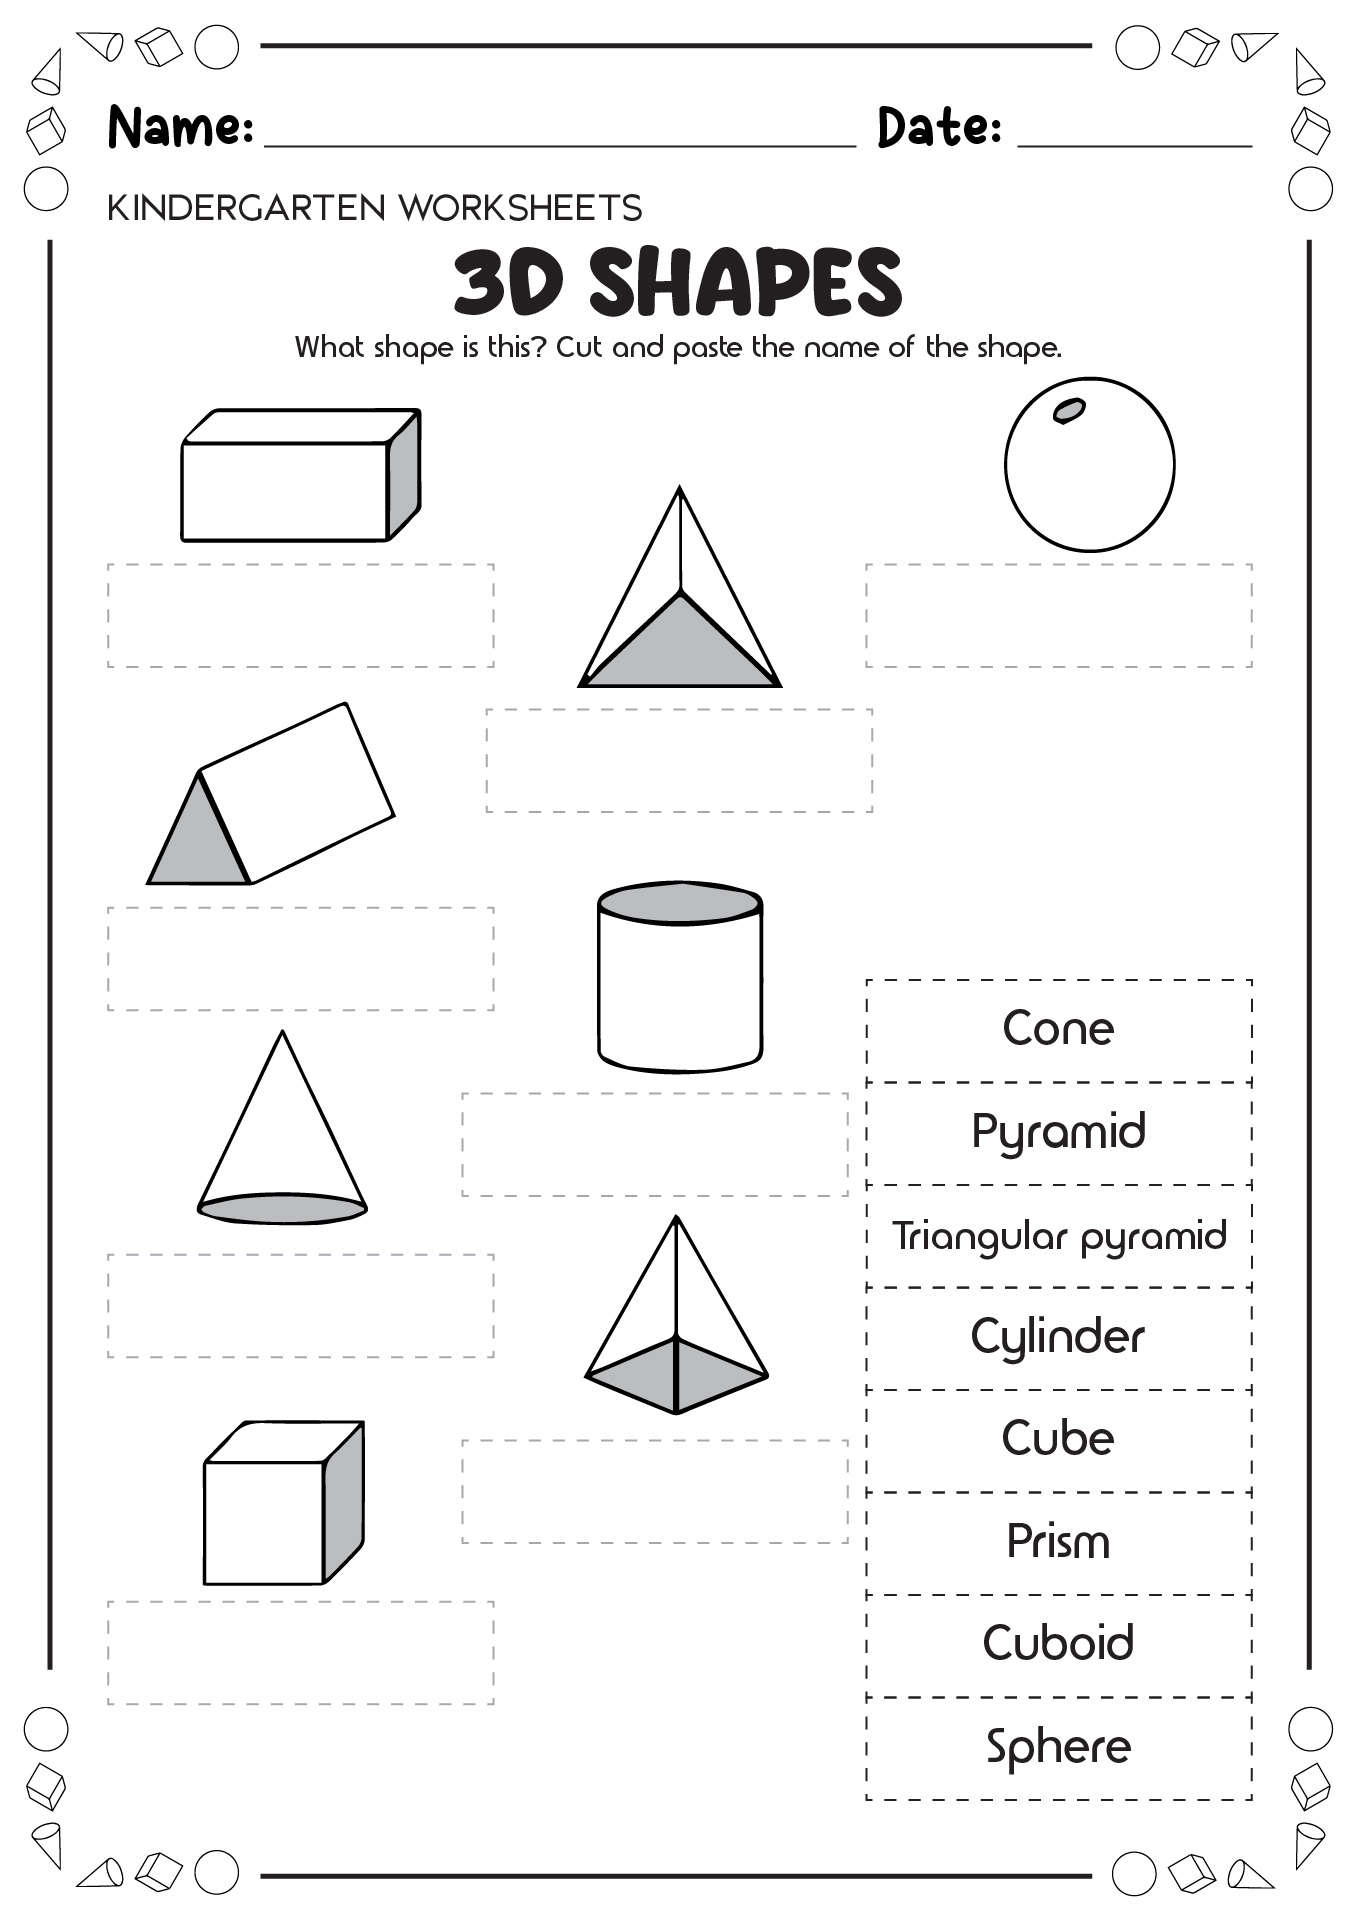 Name 3D Shapes Worksheet